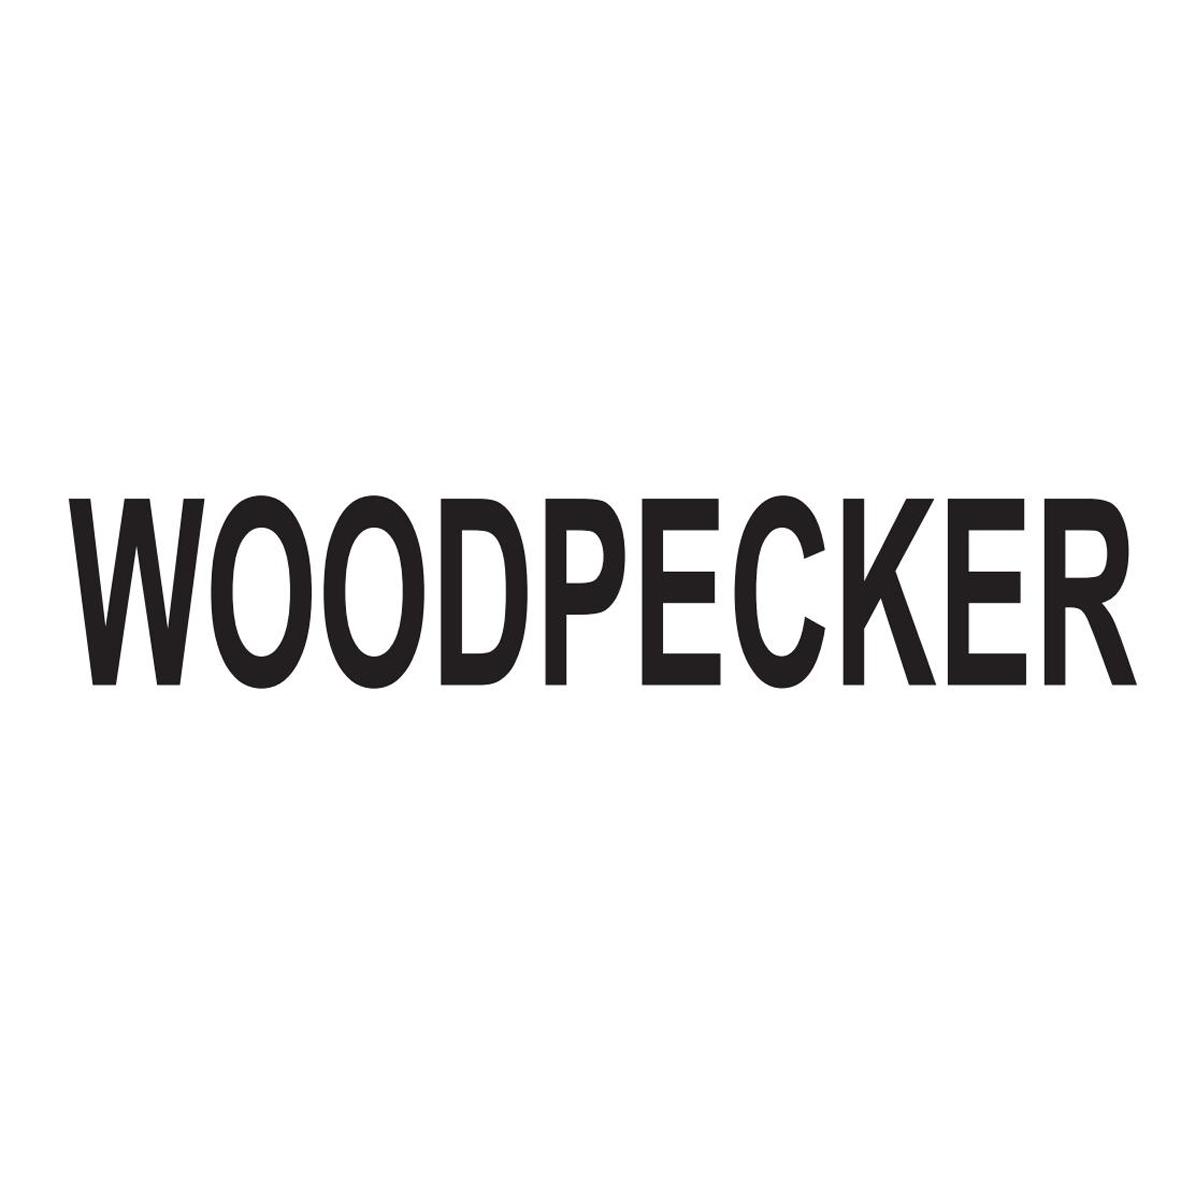  em>woodpecker /em>